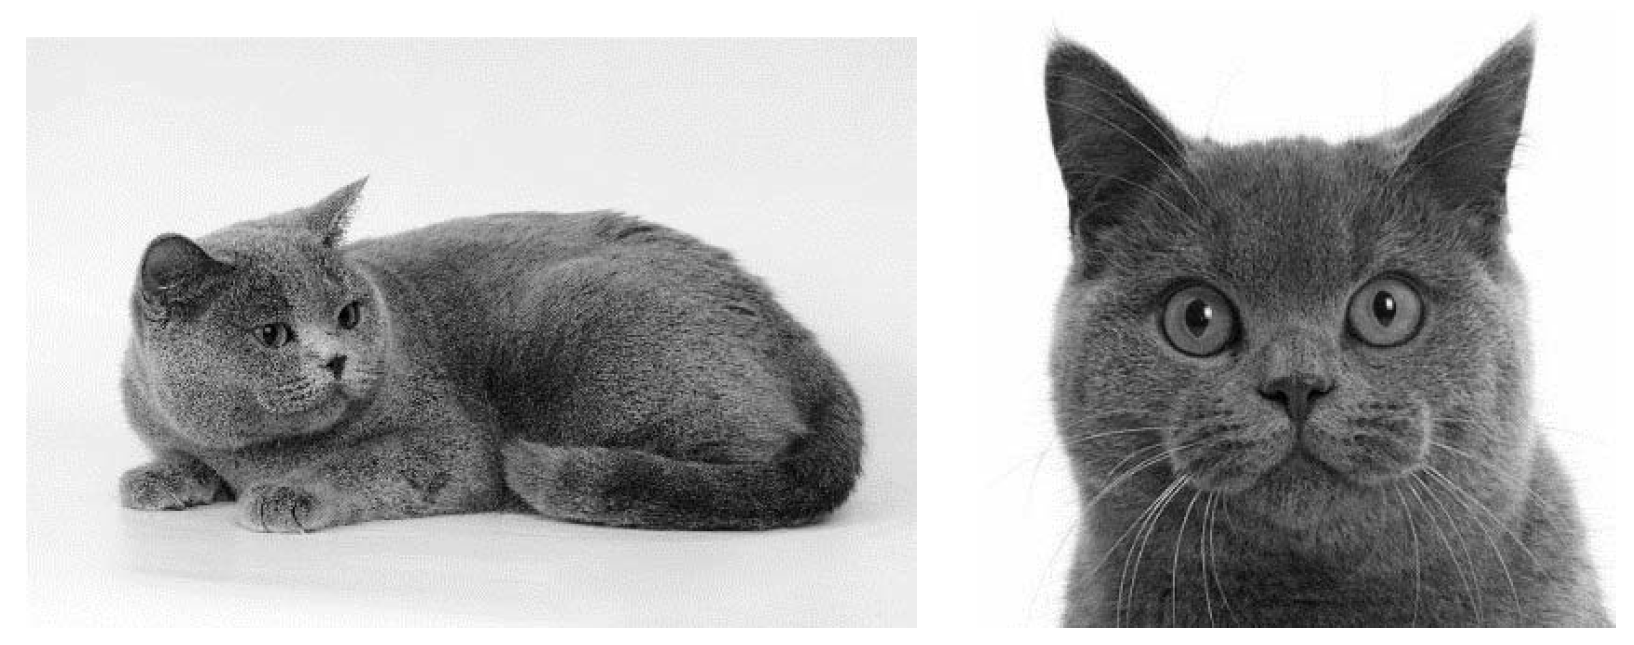 Рассмотрите фотографию кошки породы британская. Характеристика породы кошек по строению головы.